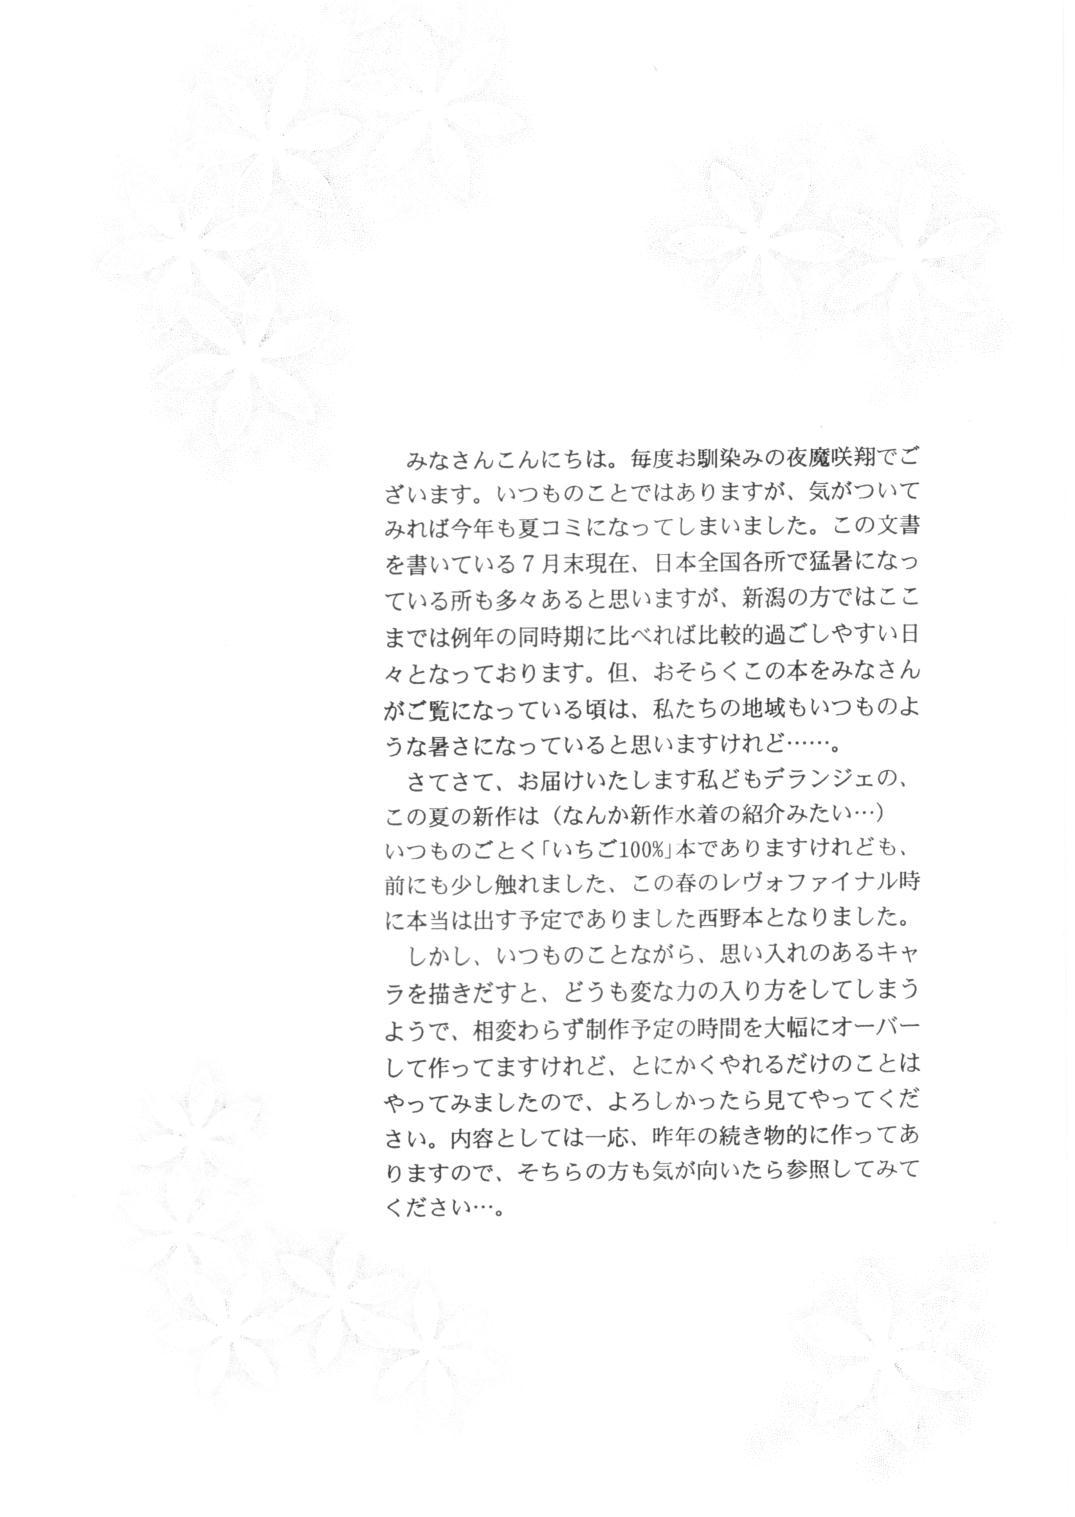 Orgy ICHIGO ∞% -2 SECOND RELATION - Ichigo 100 Shaved - Page 3